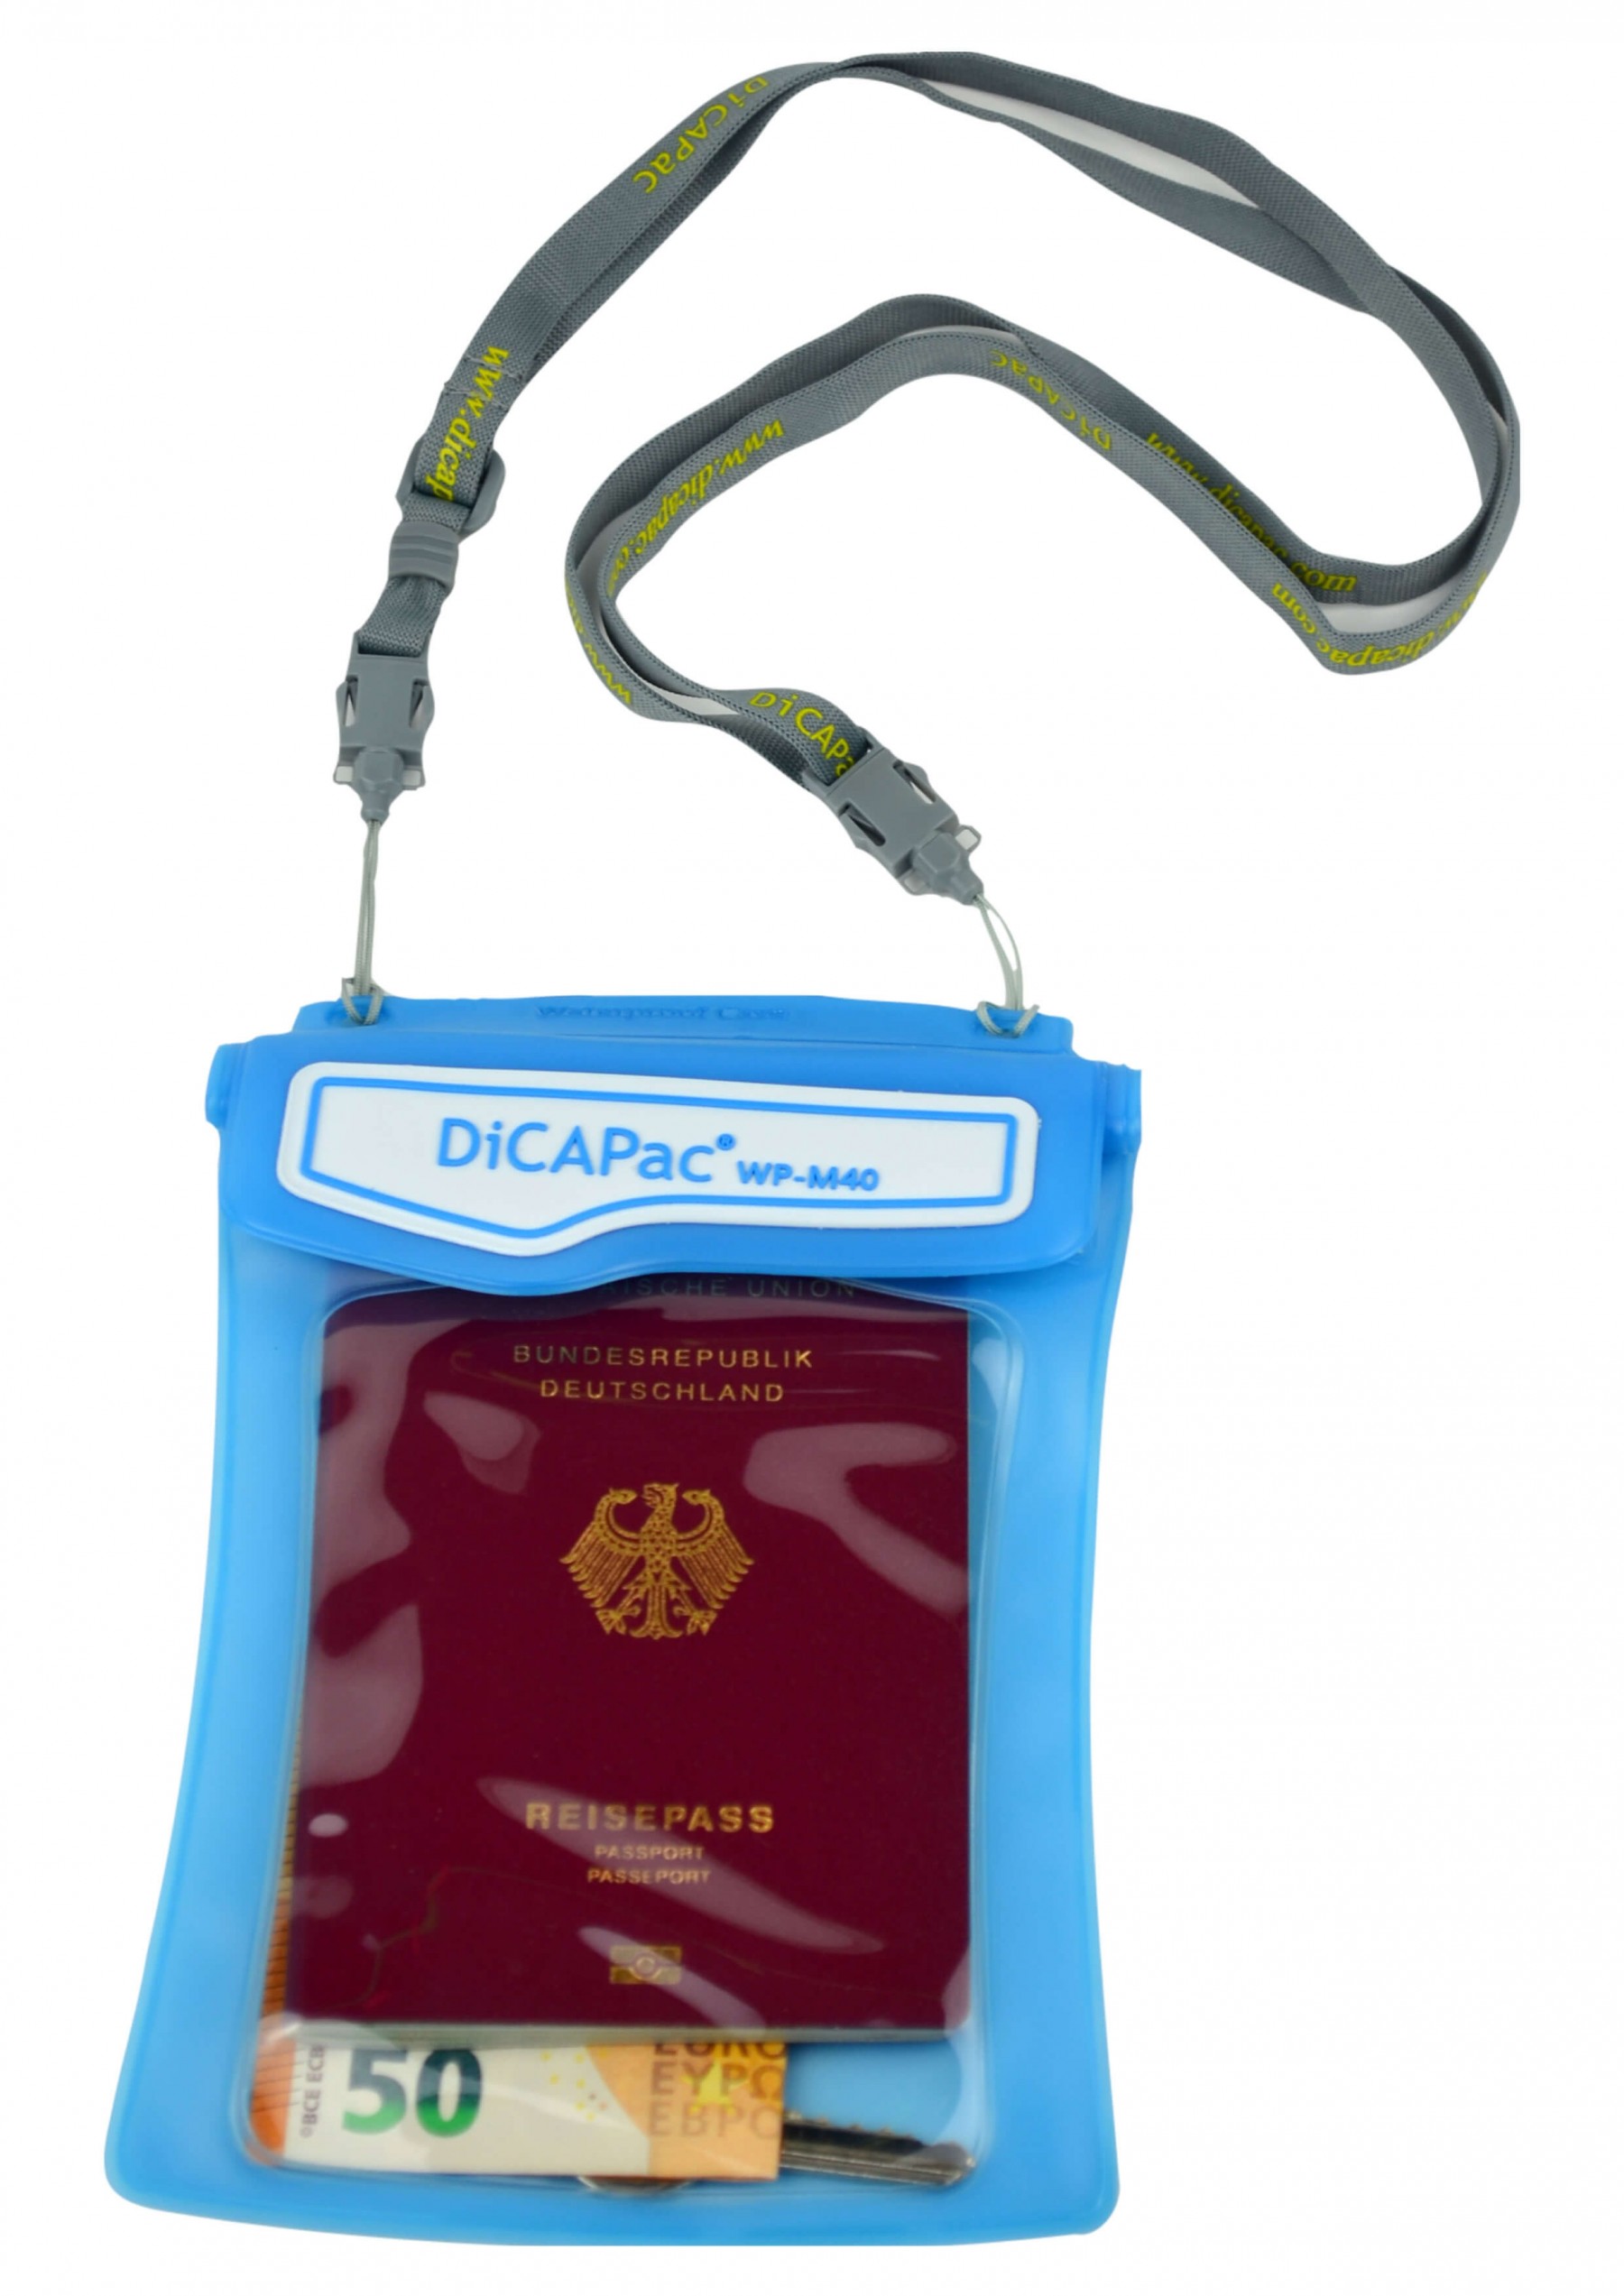 DiCAPac WP M40 Unterwasser Schutztasche Dokumente Wertsachen vorne